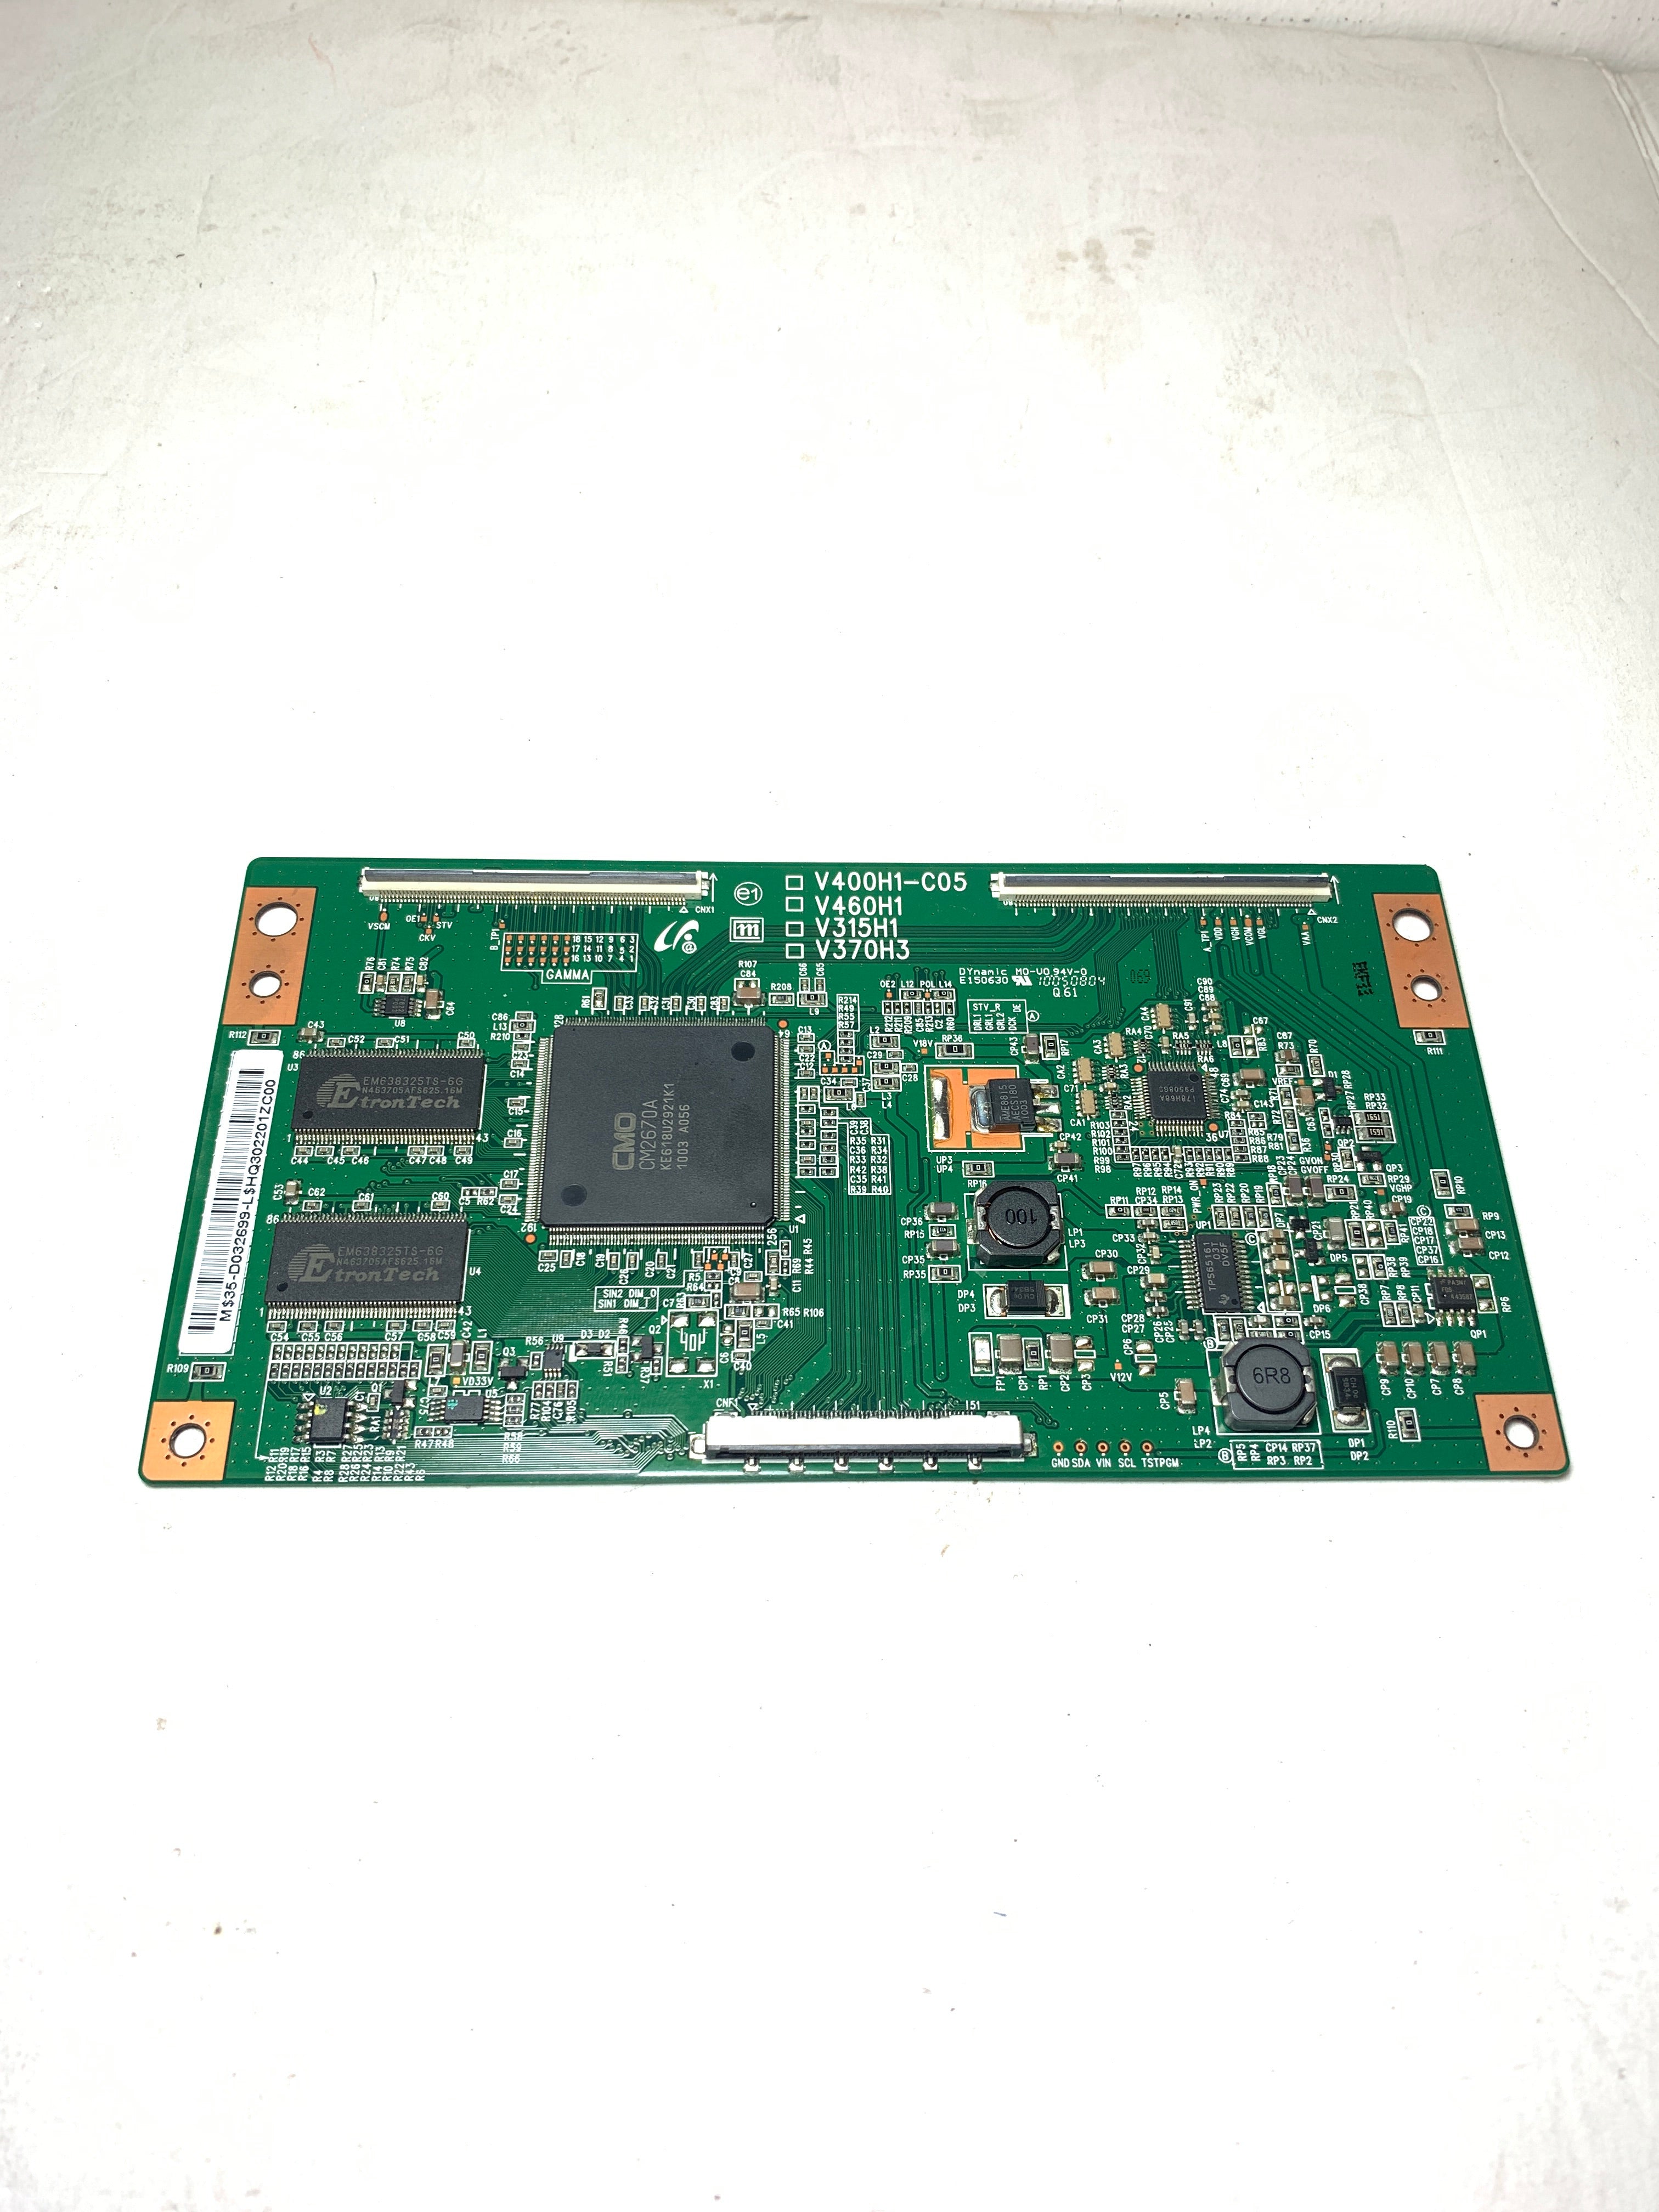 Samsung BN81-02390A (V400H1-C05, 35-D032699) T-Con Board